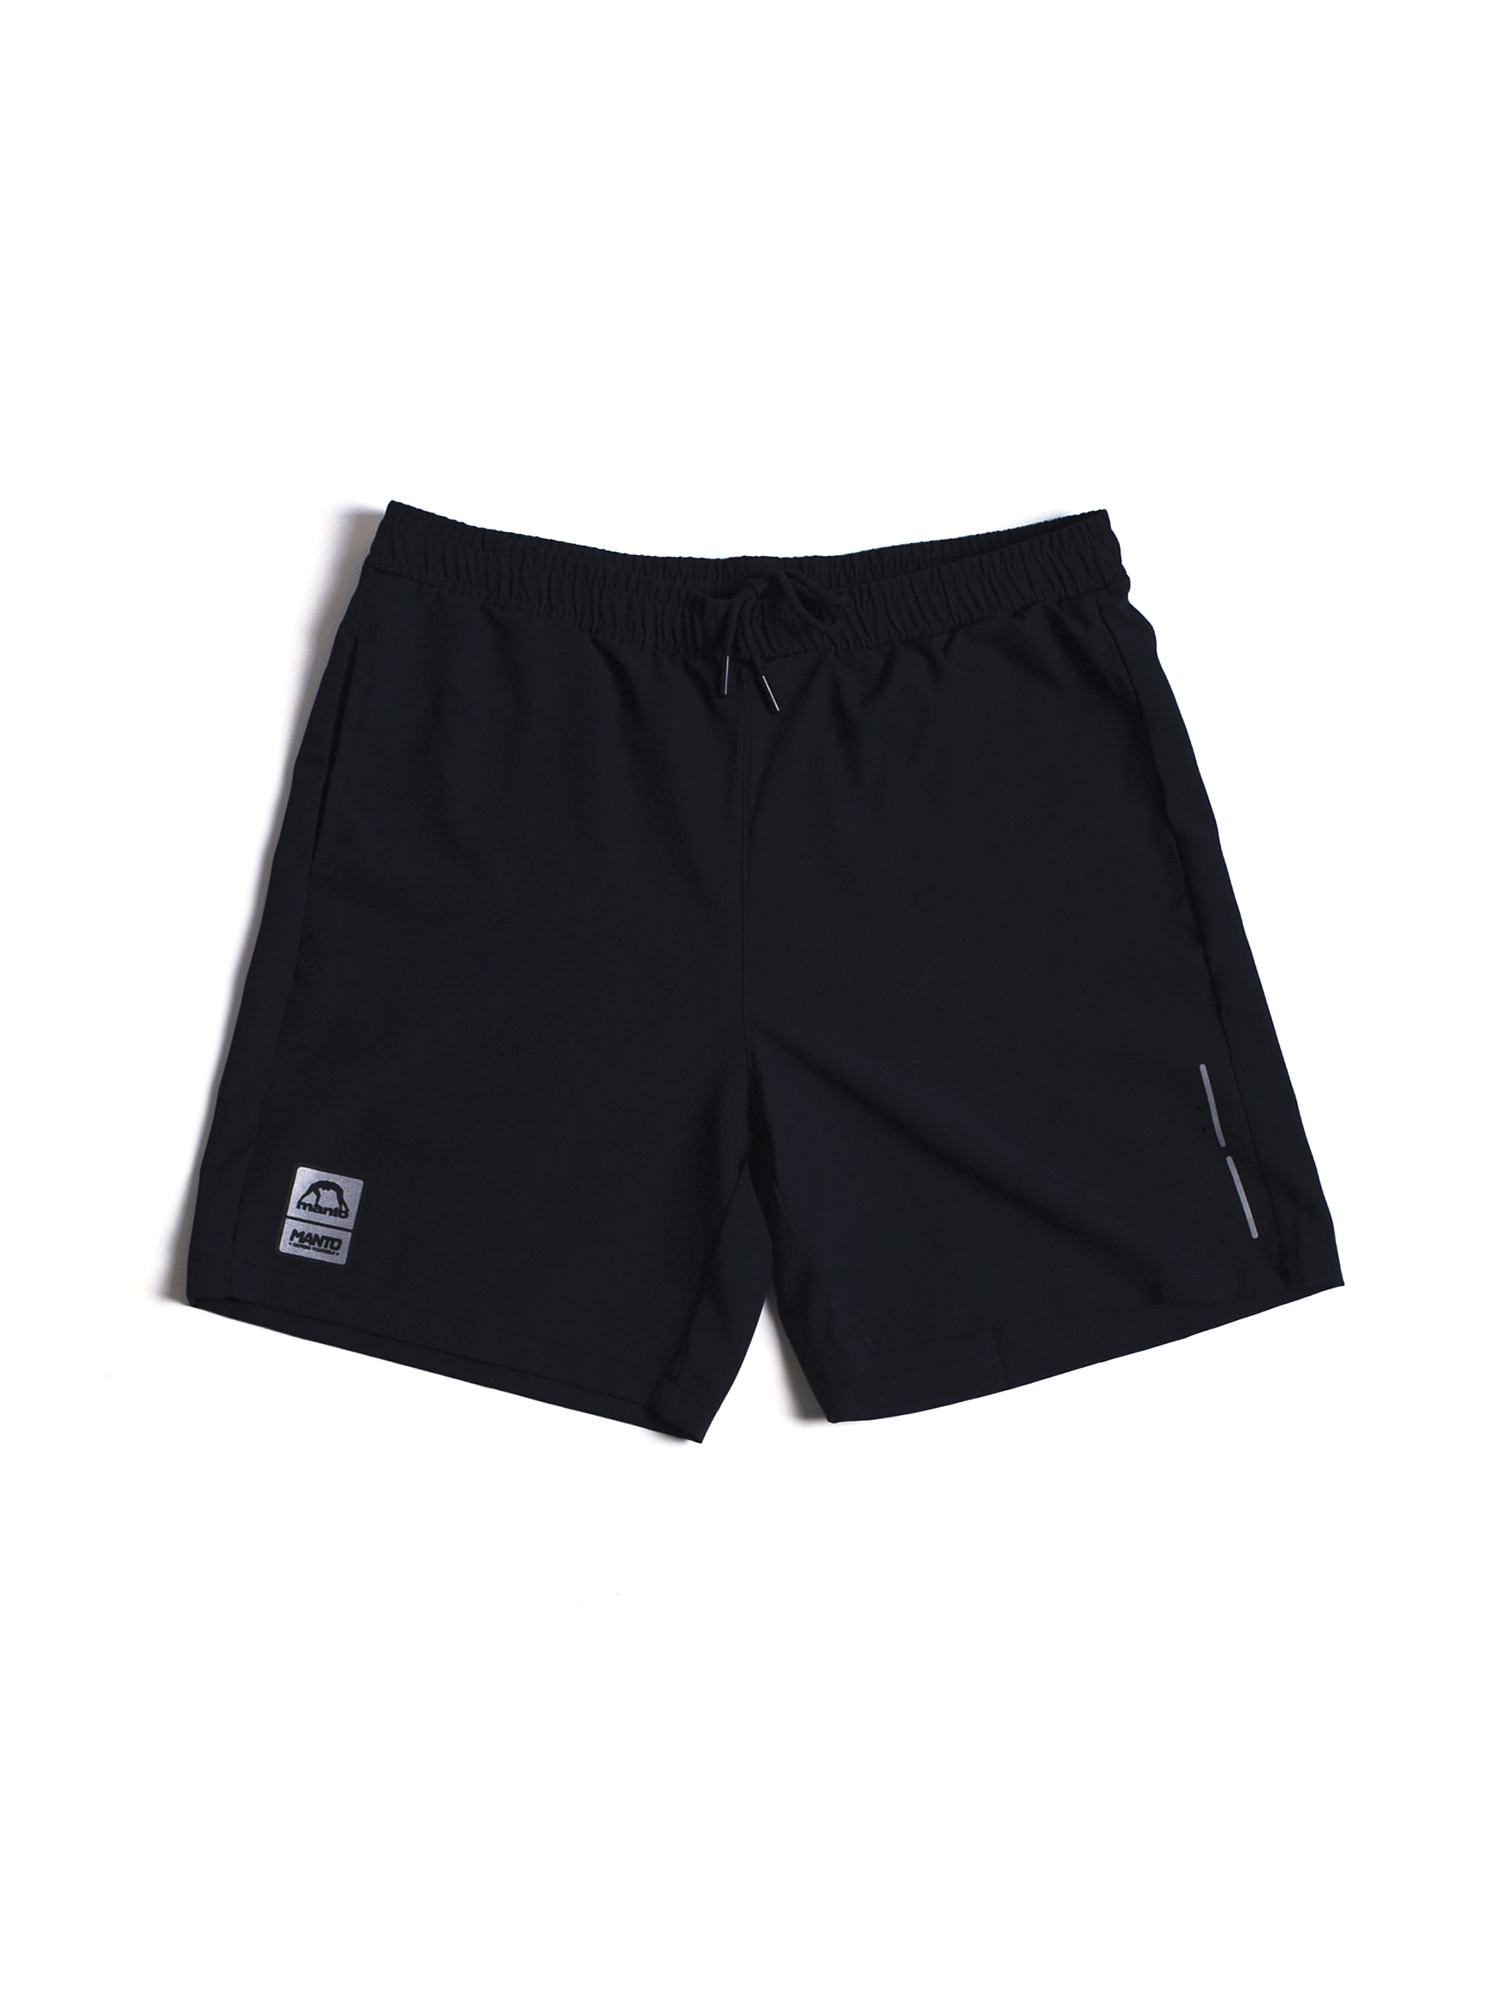 MANTO active shorts PULSE black | CLOTHING \ SHORTS/TIGHTS | Top ...